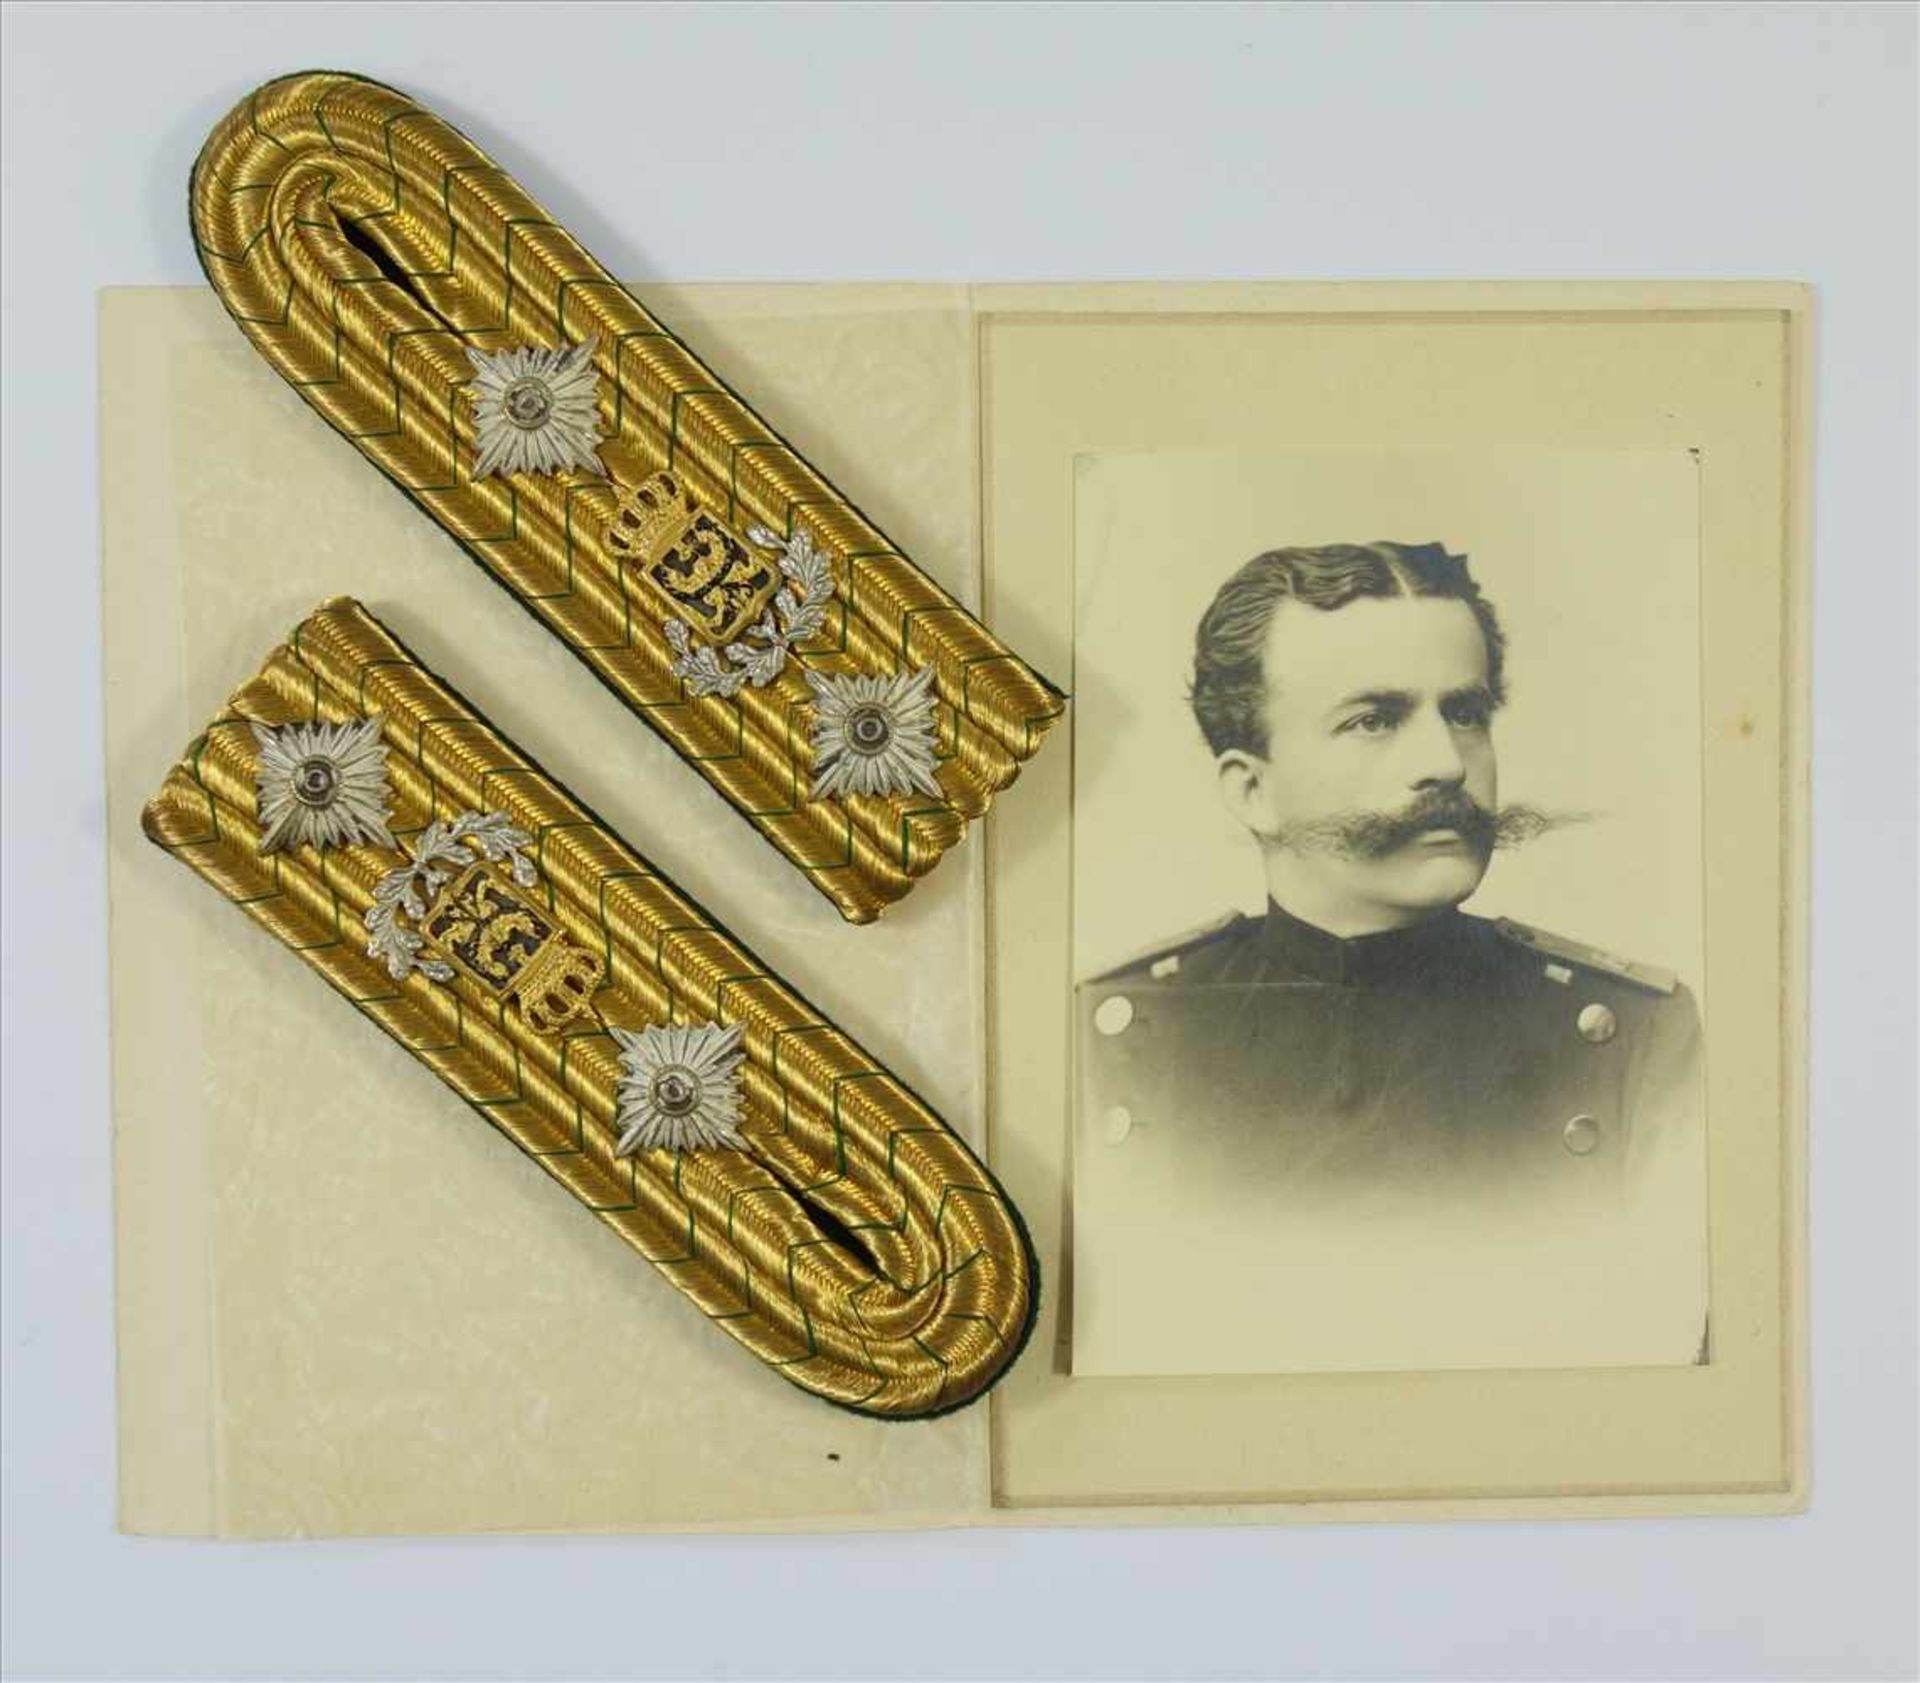 Paar Schulterklappen und Soldatenporträtffoto, Preußen, gold mit grünen Bändern, 2 Sterne, bekröntes